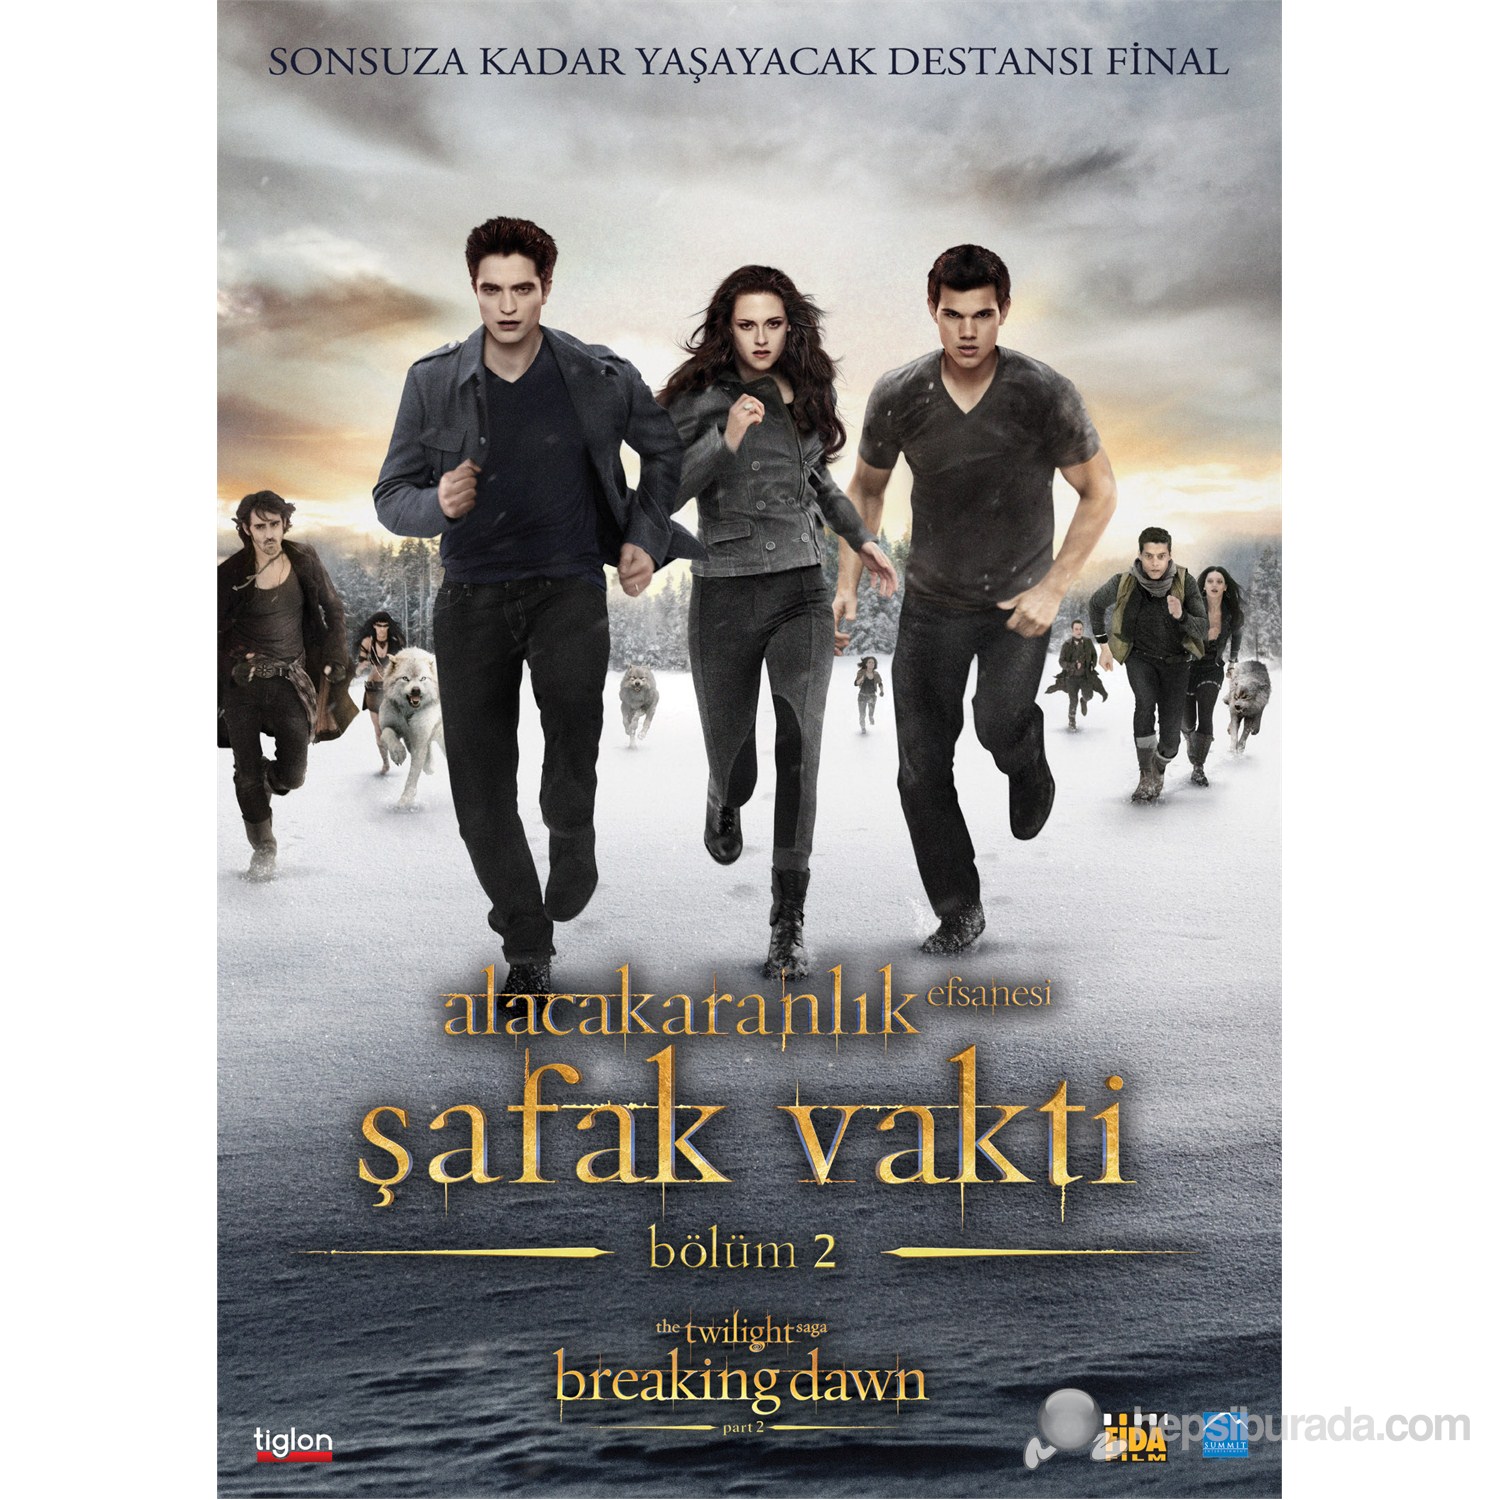 The Twilight Saga: Breaking Dawn - Part 2 (Alacakaranlık Efsanesi: Şafak Vakti - Bölüm 2) (DVD)